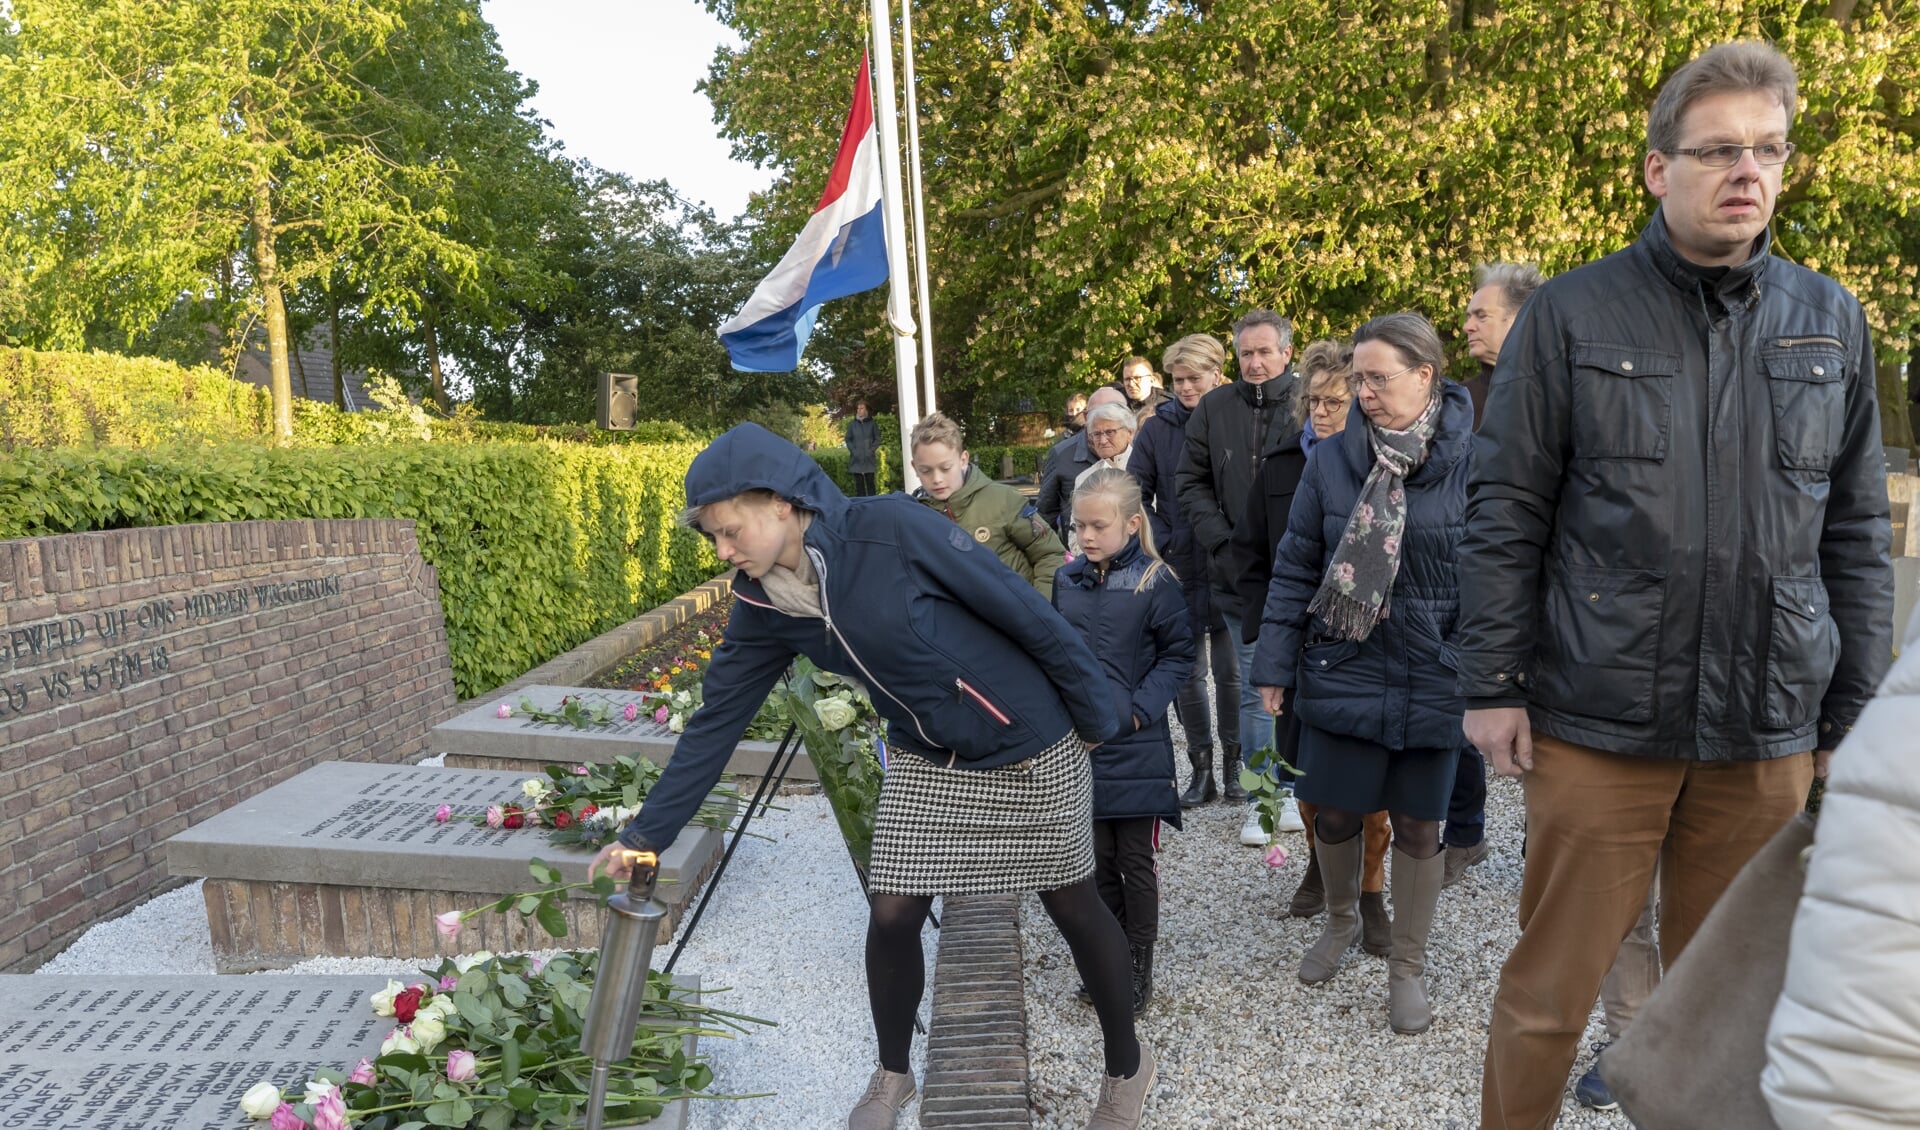 • De dodenherdenking in Wijk en Aalburg trok zaterdagavond veel bezoekers.